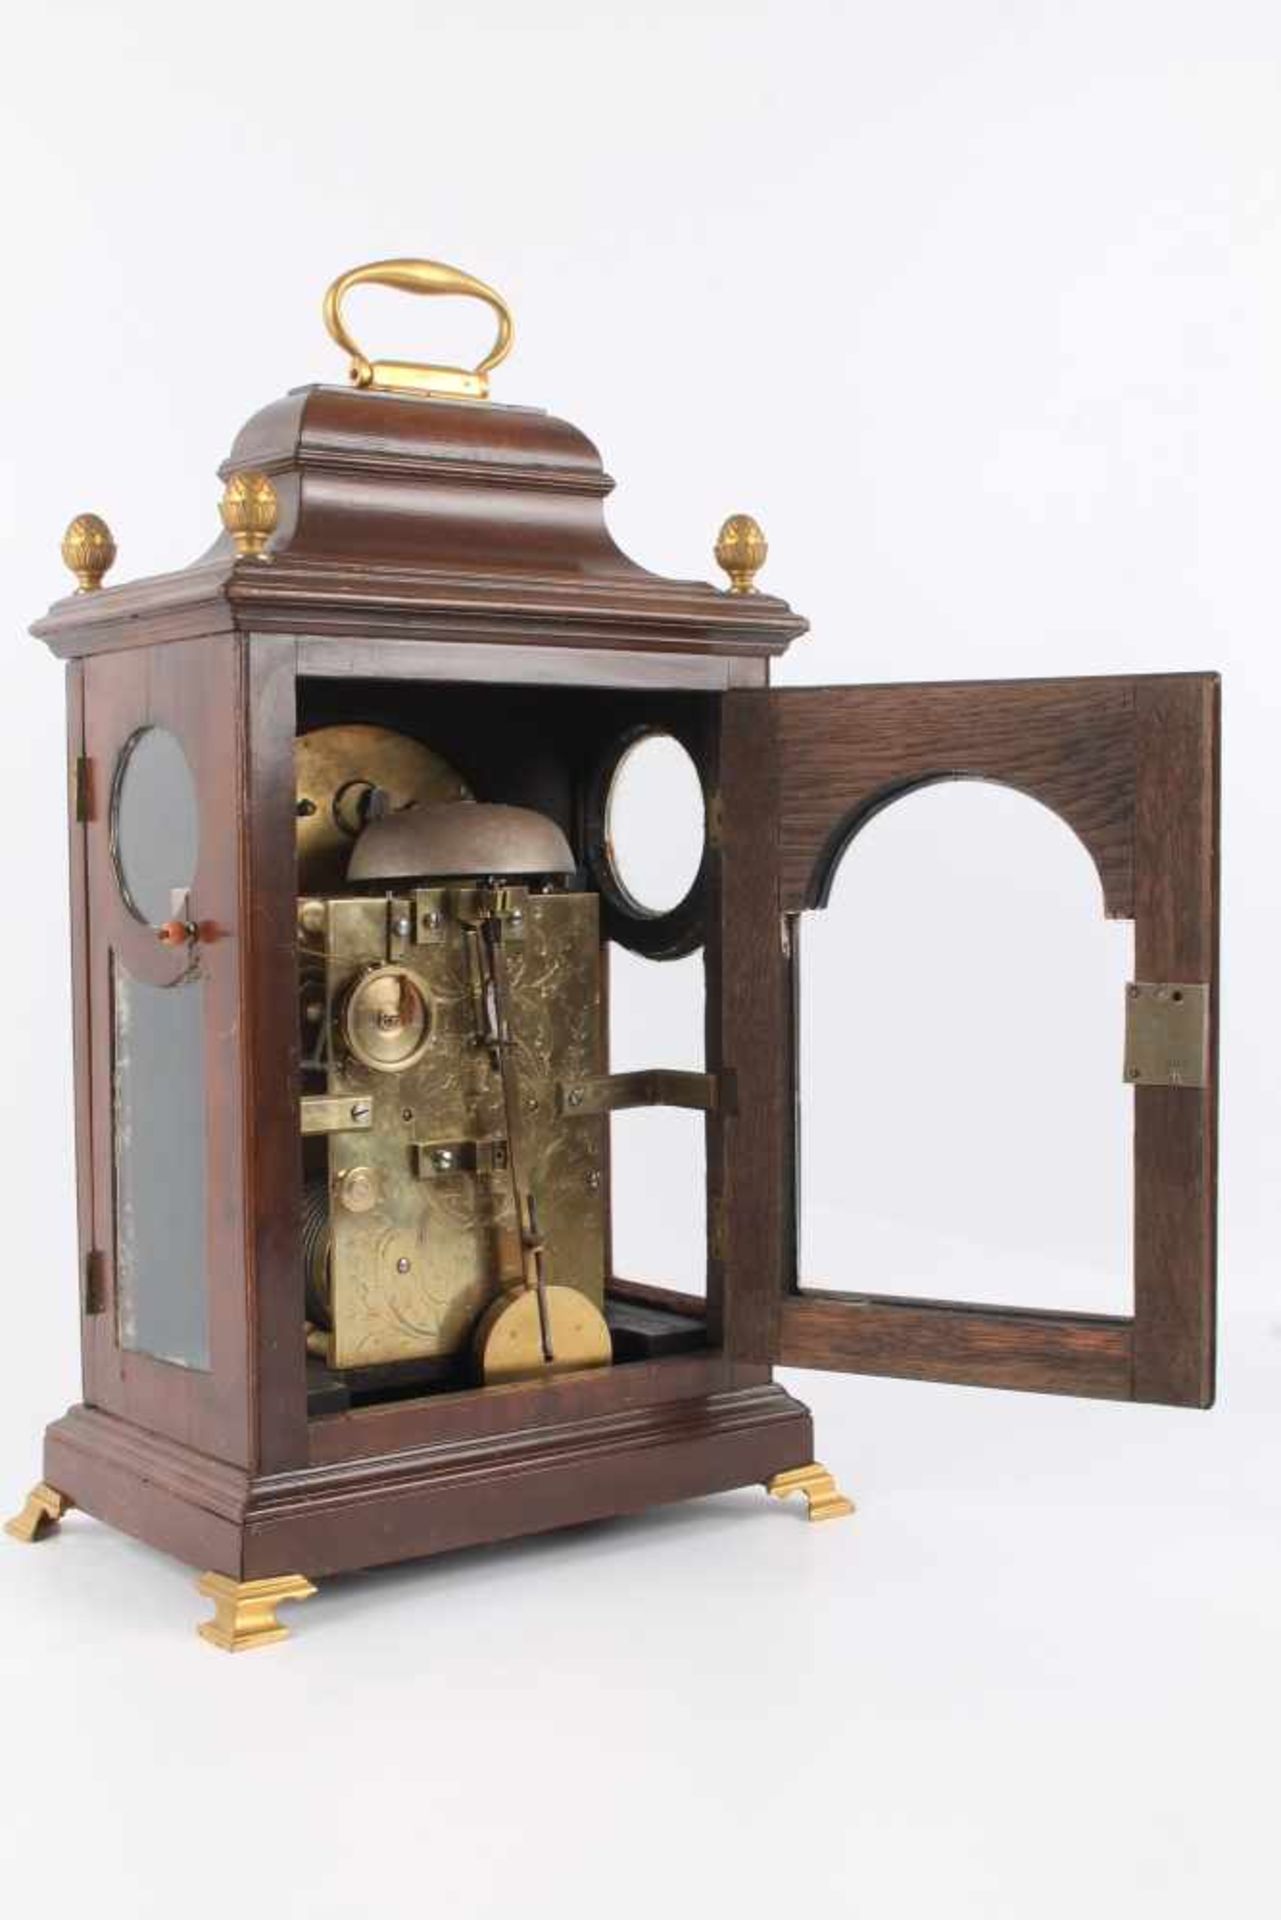 Stockuhr, London, bracket clock,Holzgehäuse m. Messingaplikken, verziertes Zifferblatt, bezeichnet - Image 4 of 6